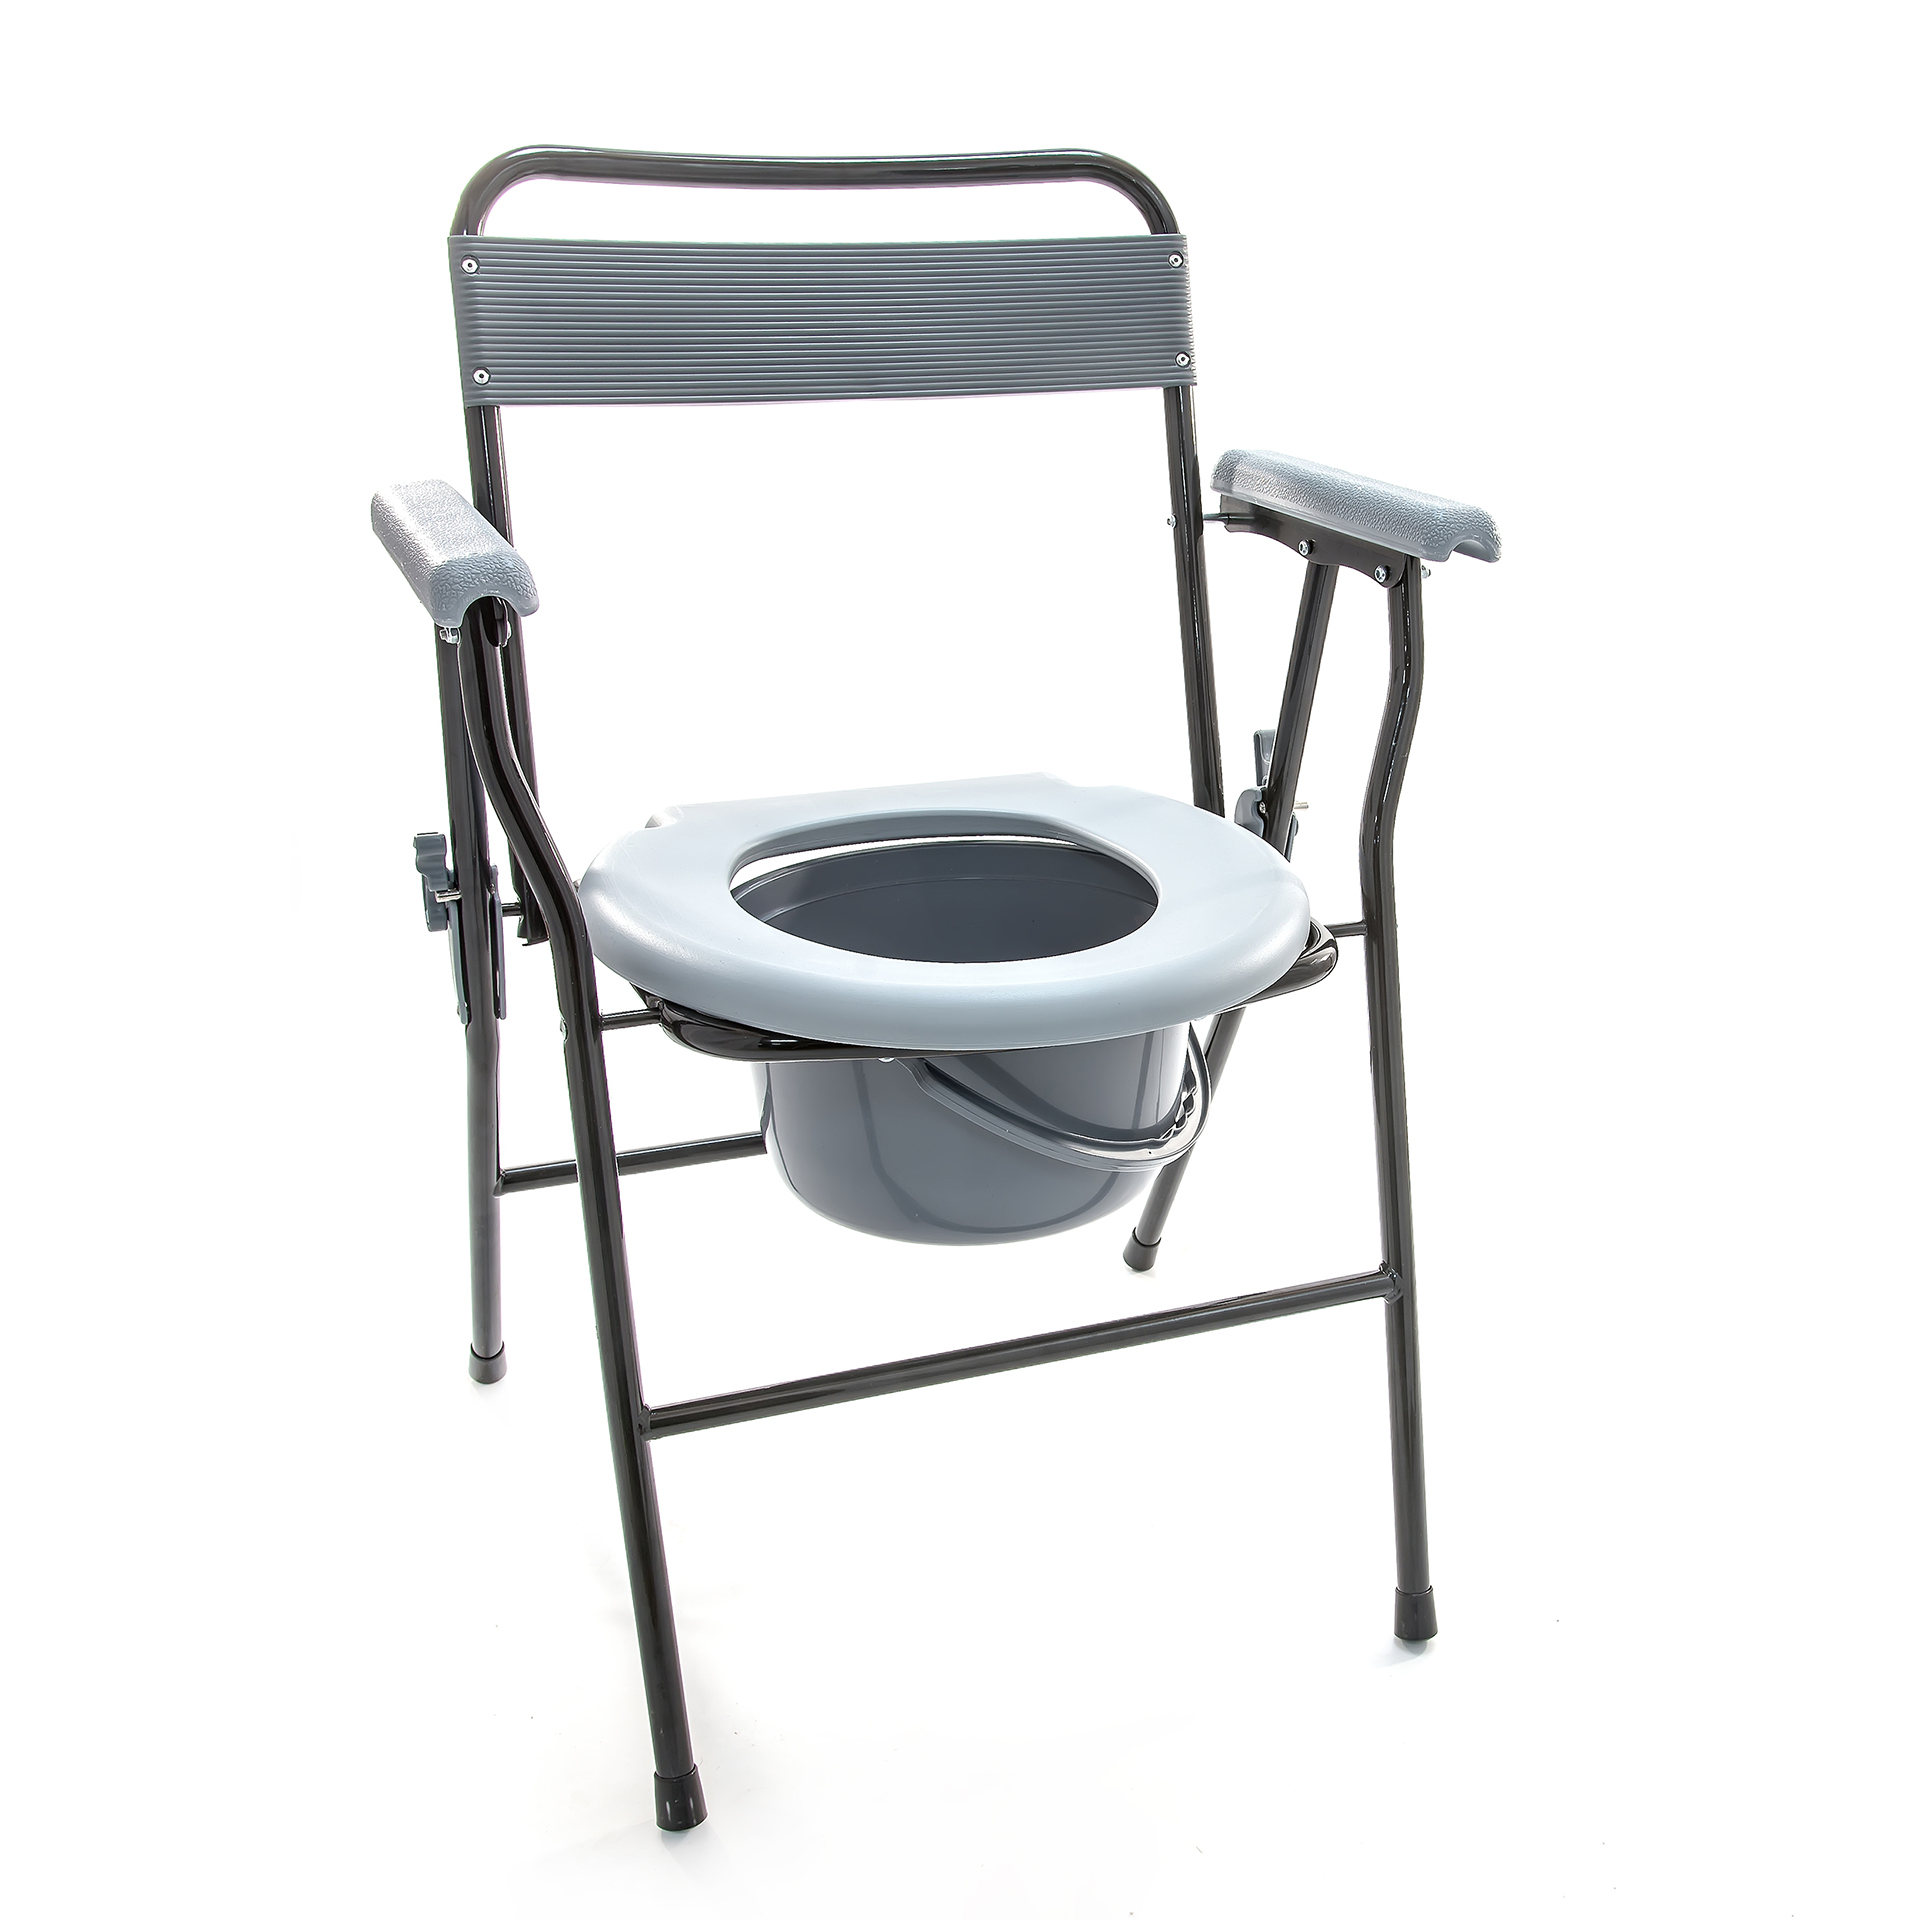 Мега оптим кресло туалет оптим fs895l